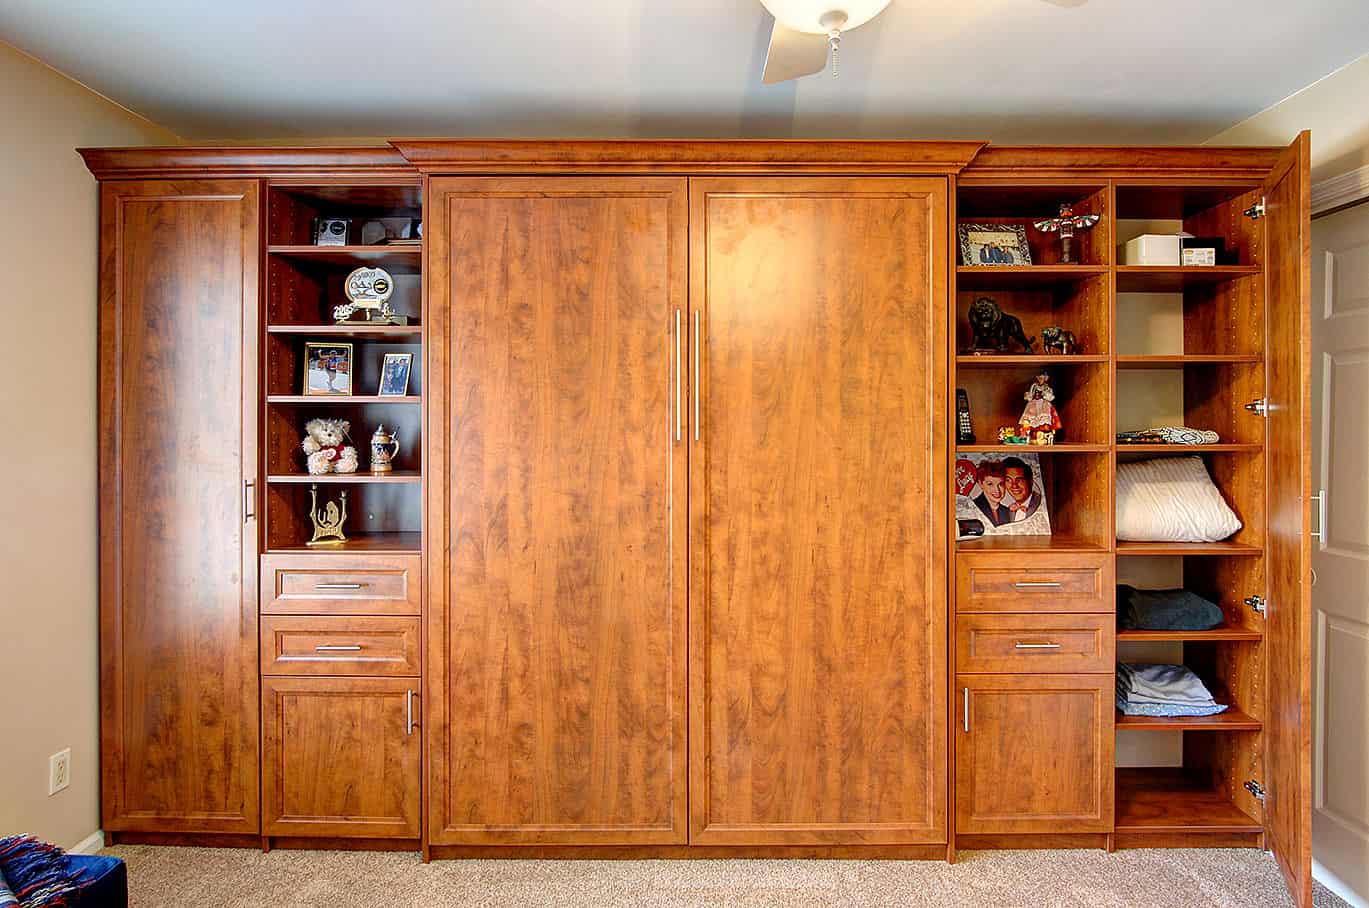 壁床与平落地定制橱柜中色调木头做的柜子和开放的架子。